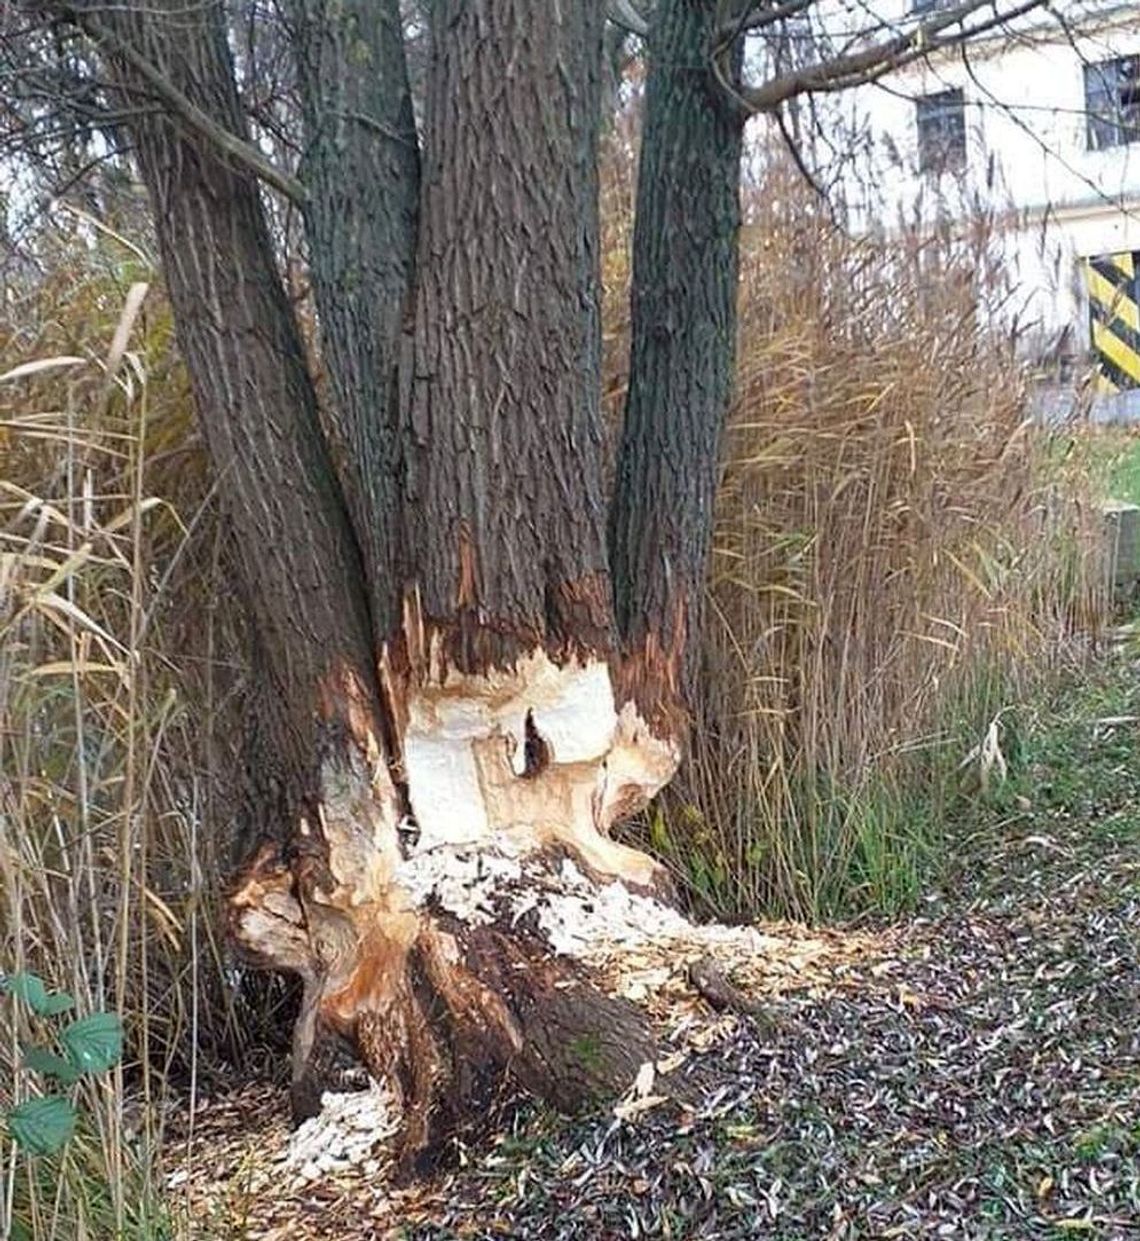 Podgryzione przez bobry drzewa mogą spaść na parking - ostrzega czytelniczka